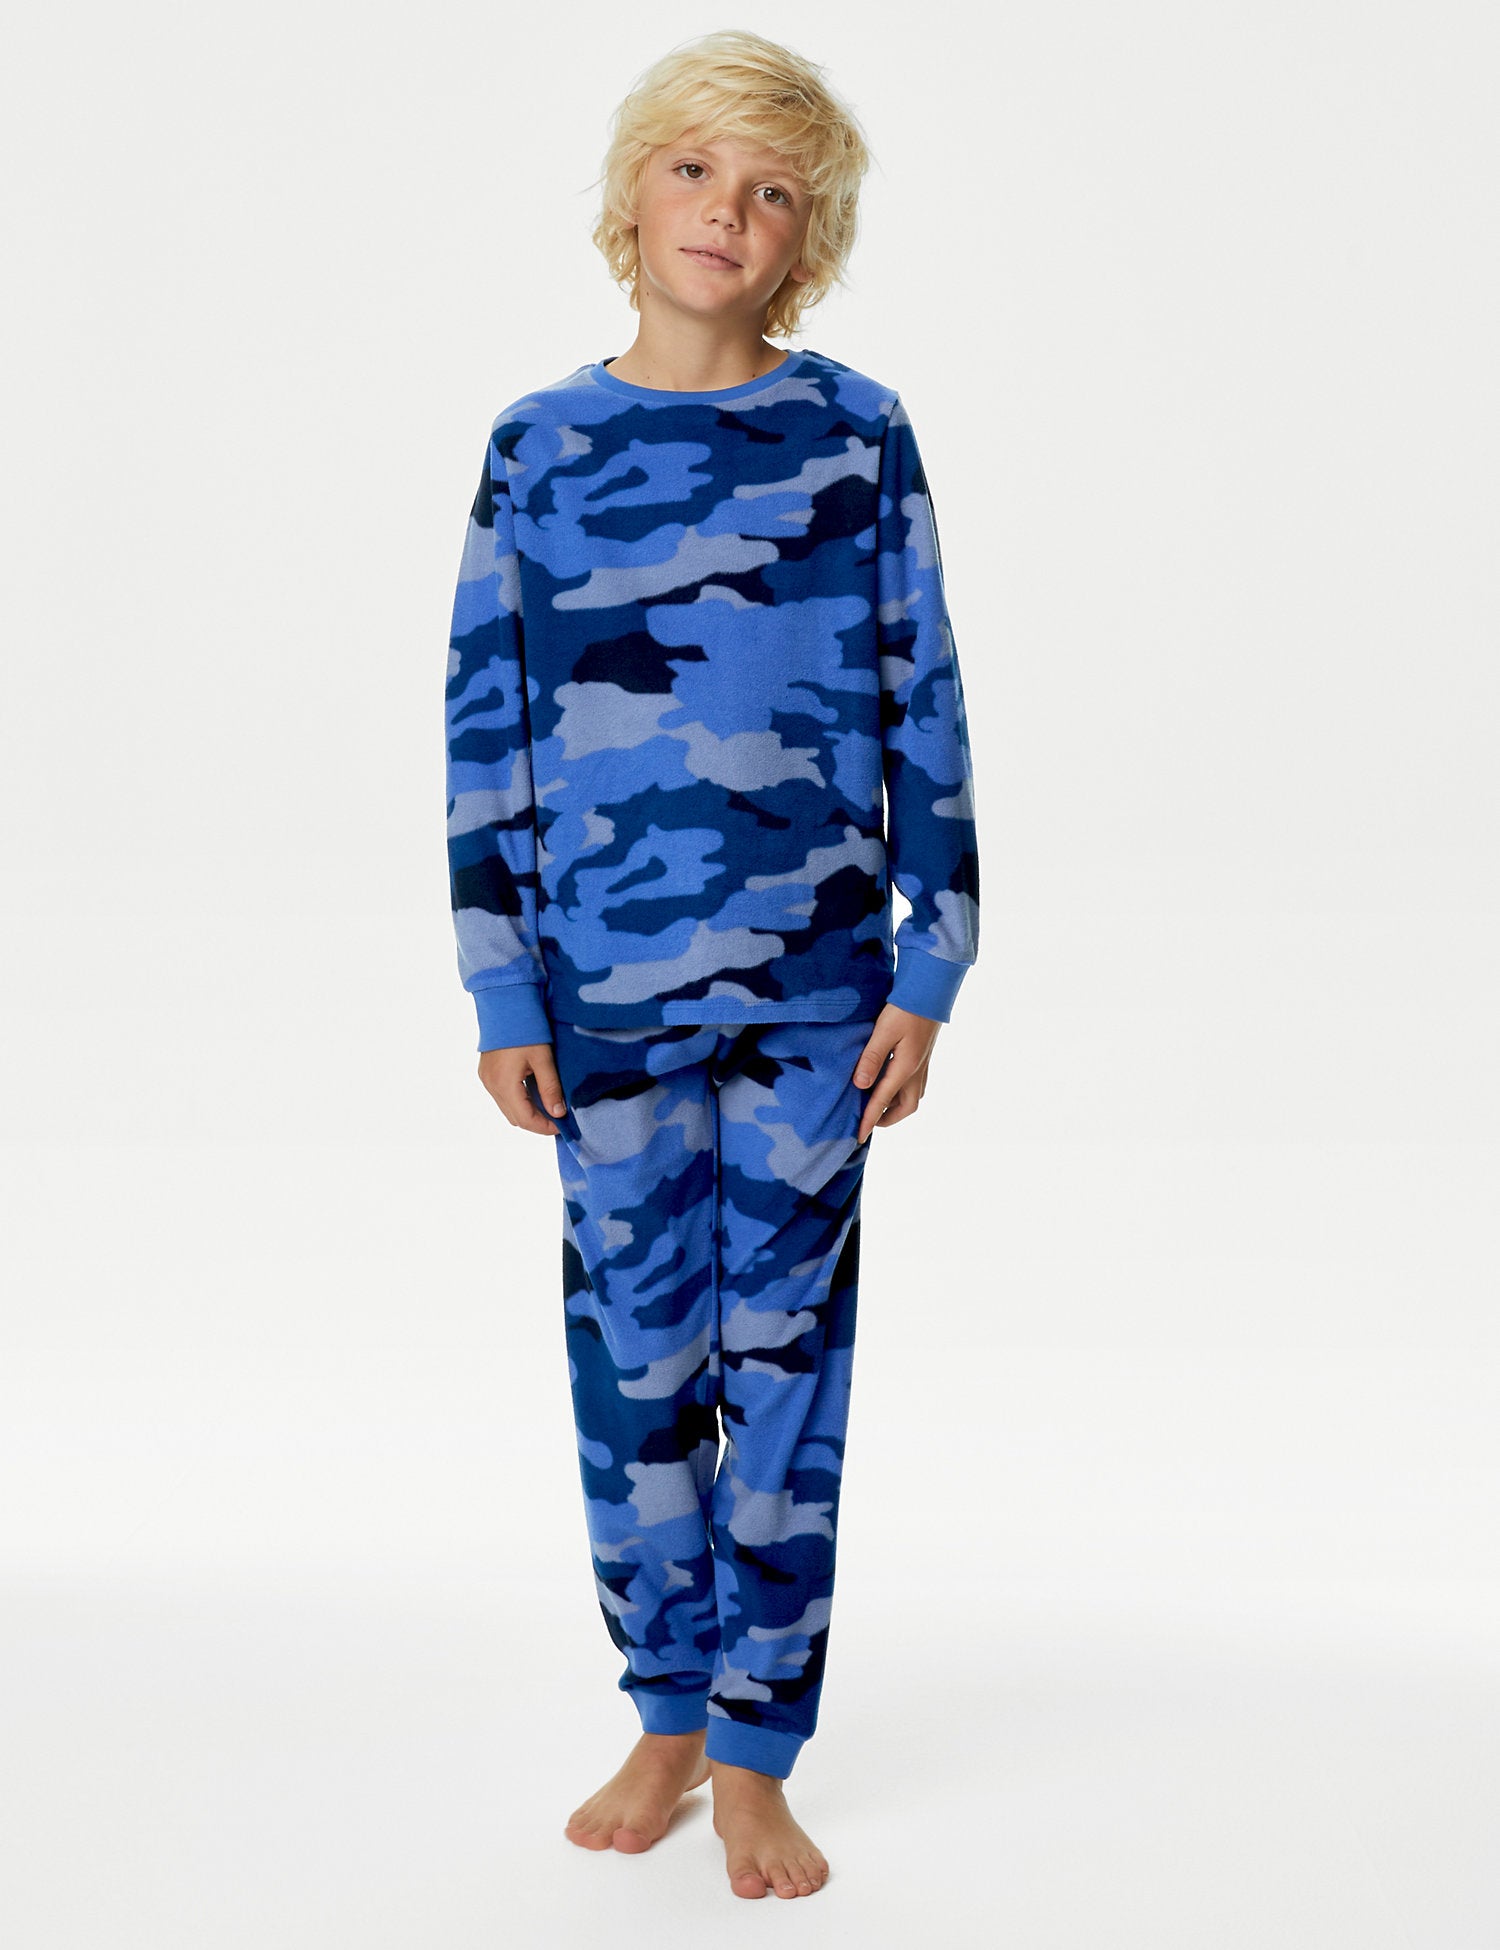 Fleece Camouflage Pyjamas